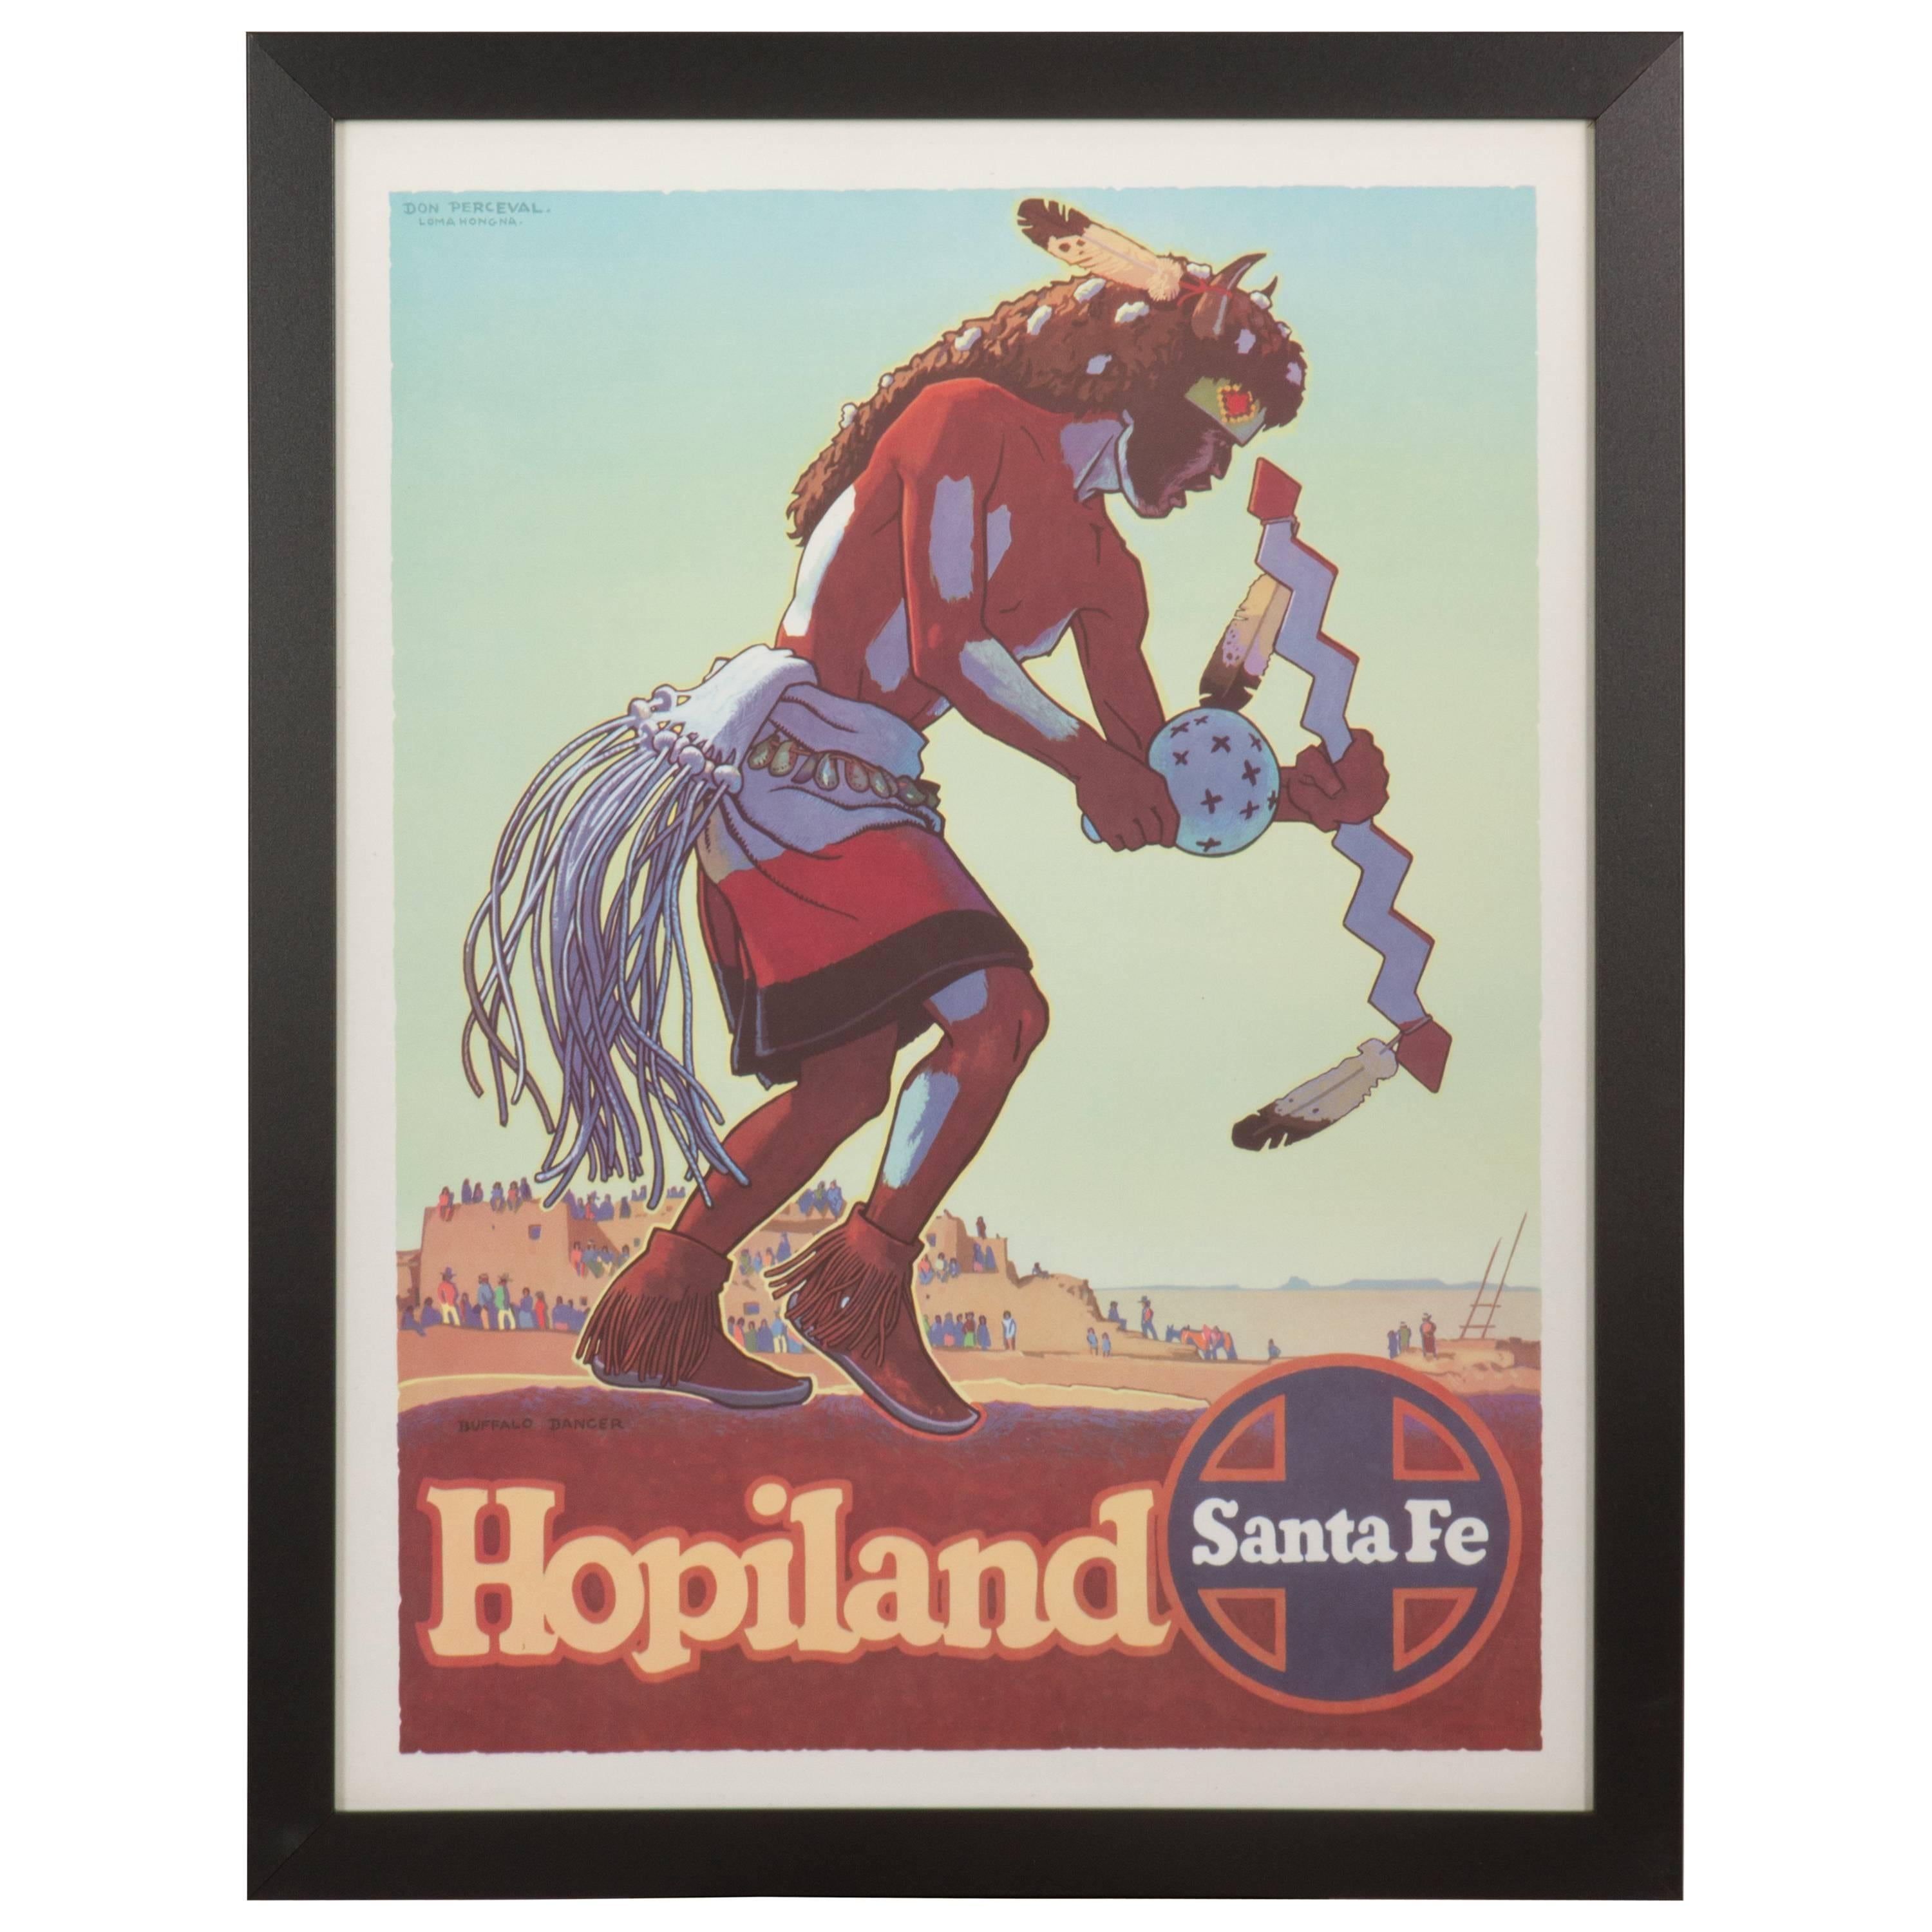 Original Vintage Santa Fe Railroad Poster "Hopi Land" by Don Perceval For Sale